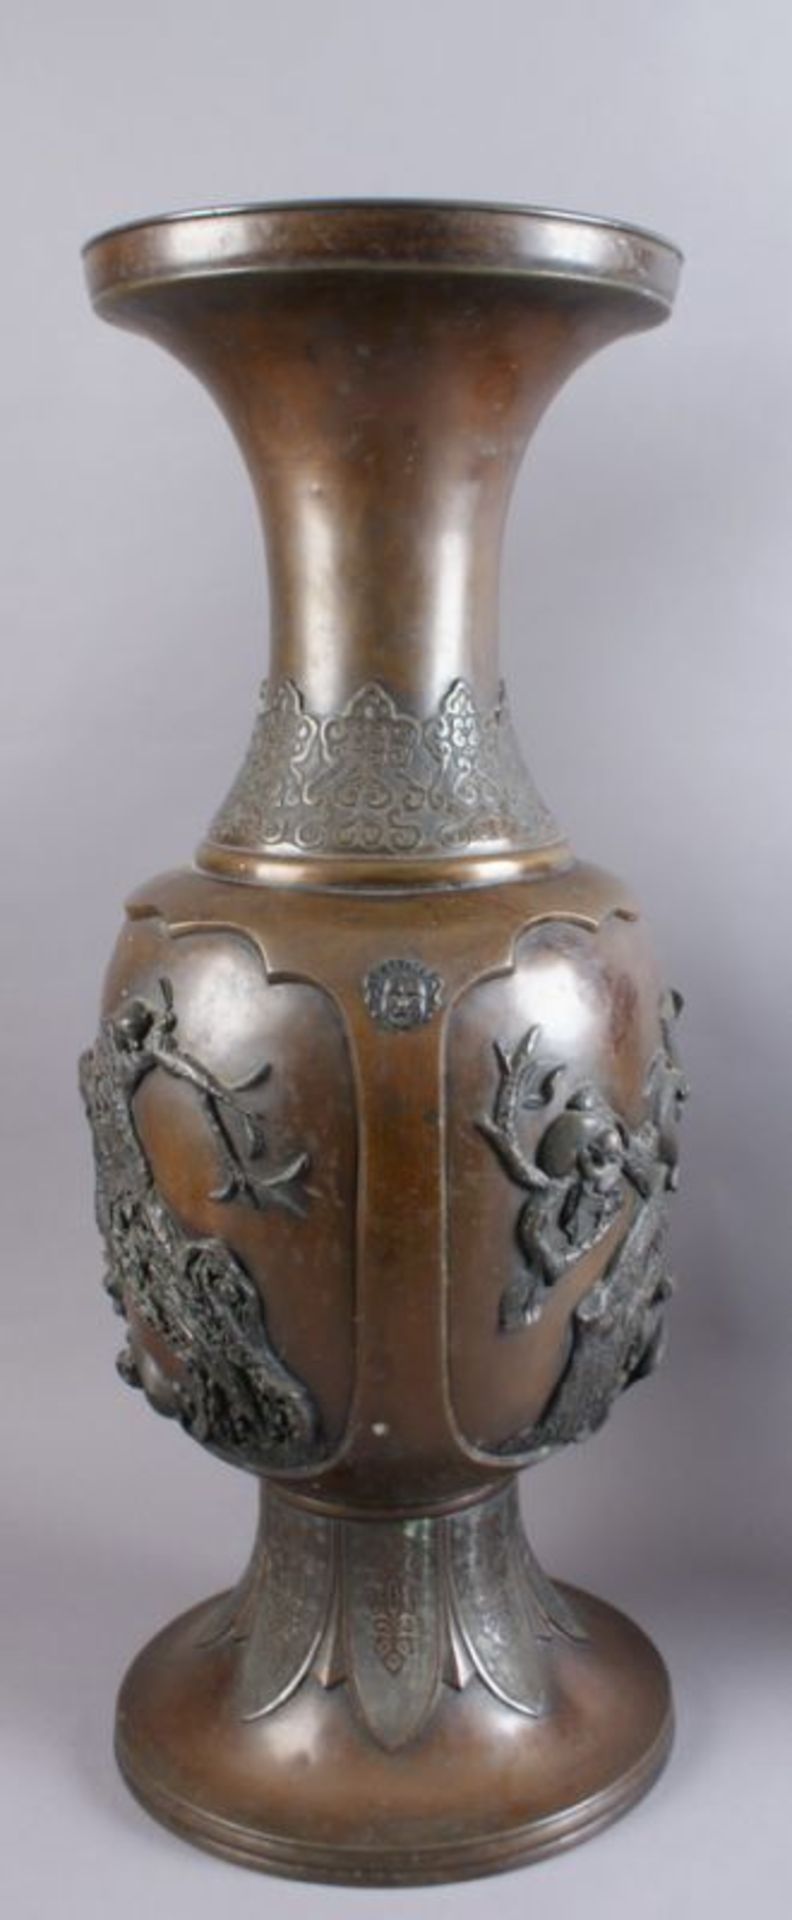 PAAR BRONZE VASEN Japan, 19. JH, zwei grosse Vasen mit Reliefdekor, Darstellung von spielenden Affen - Bild 10 aus 11